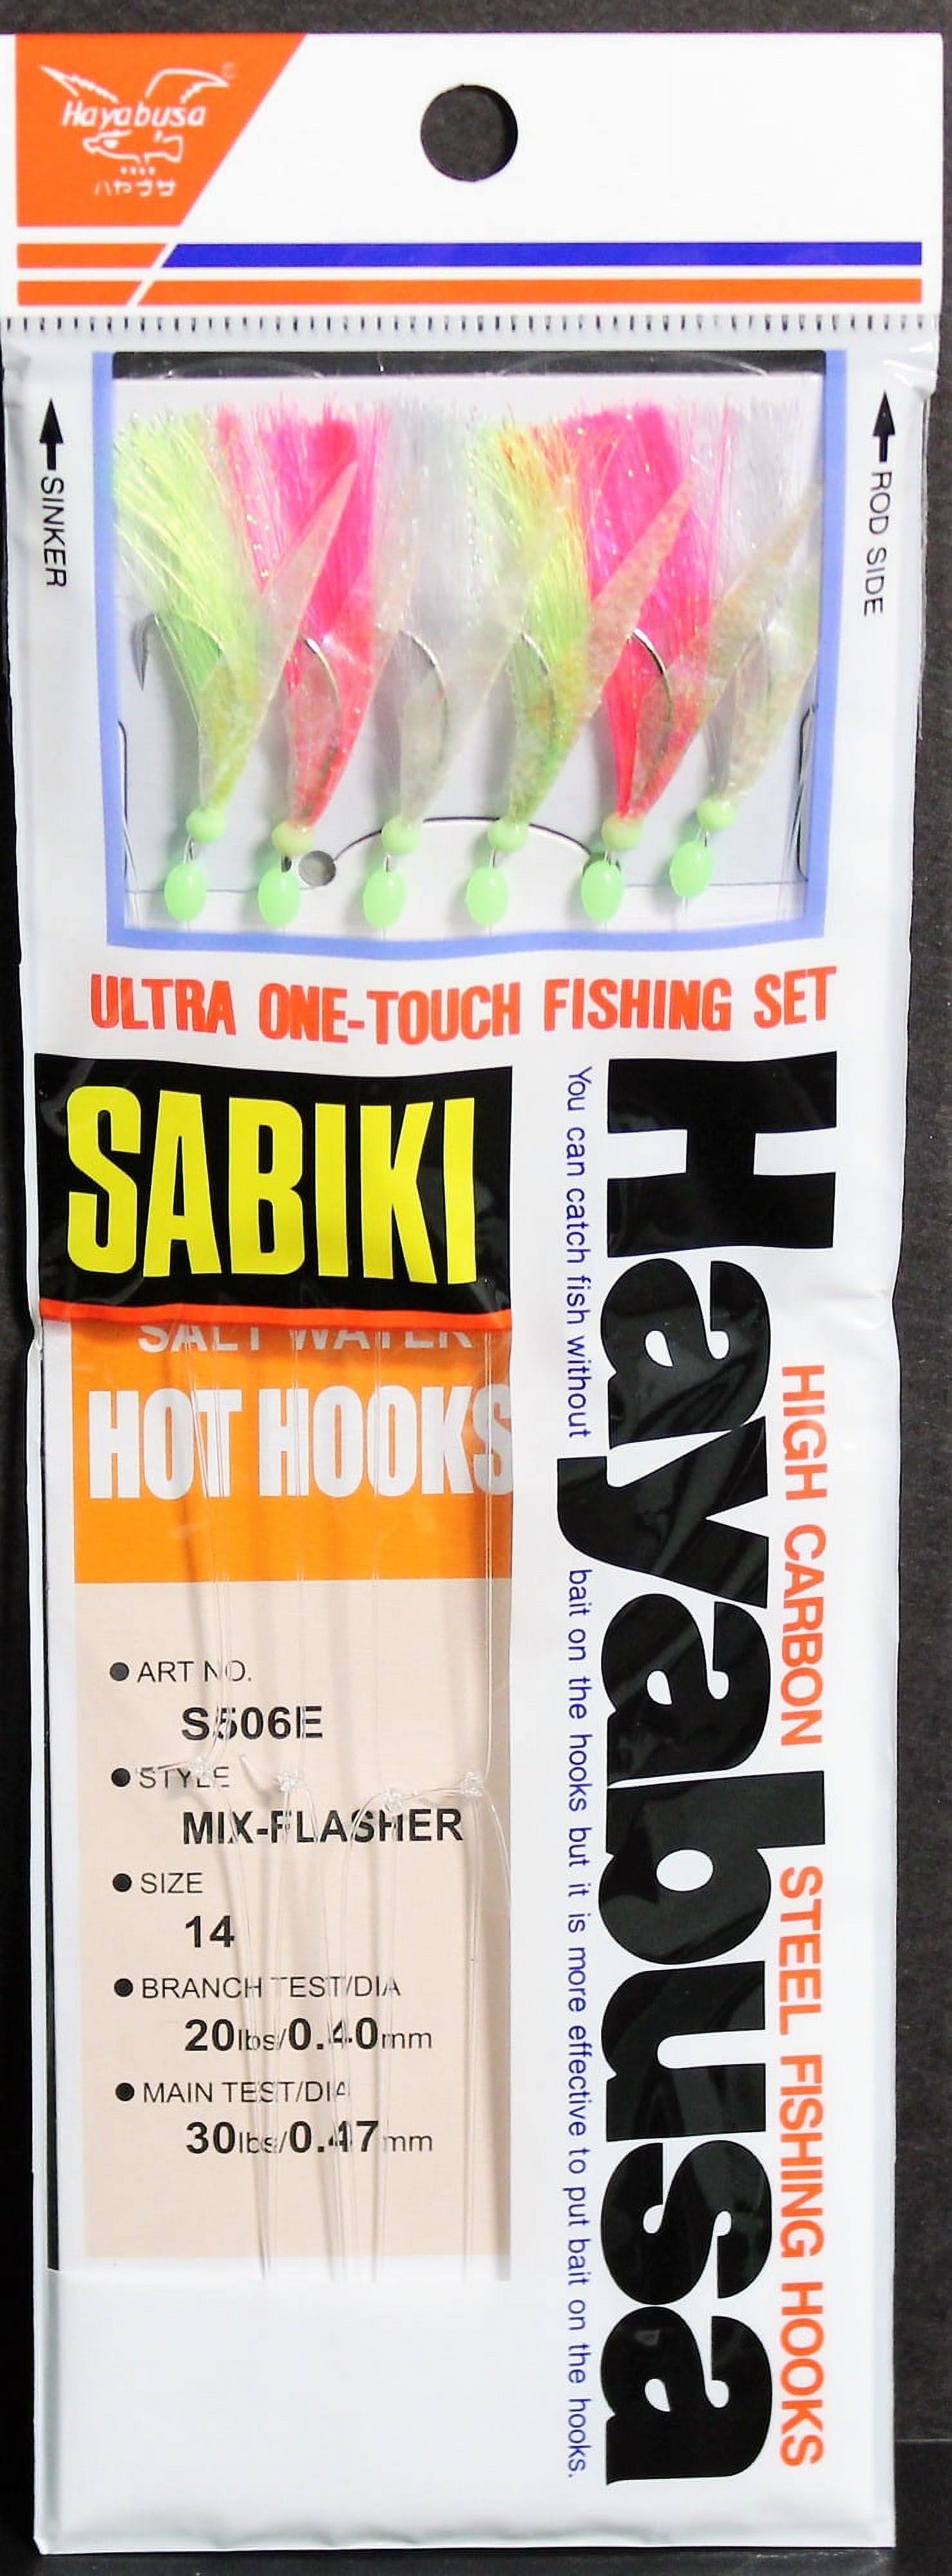 Hayabusa Sabiki Saltwater Hot Hooks